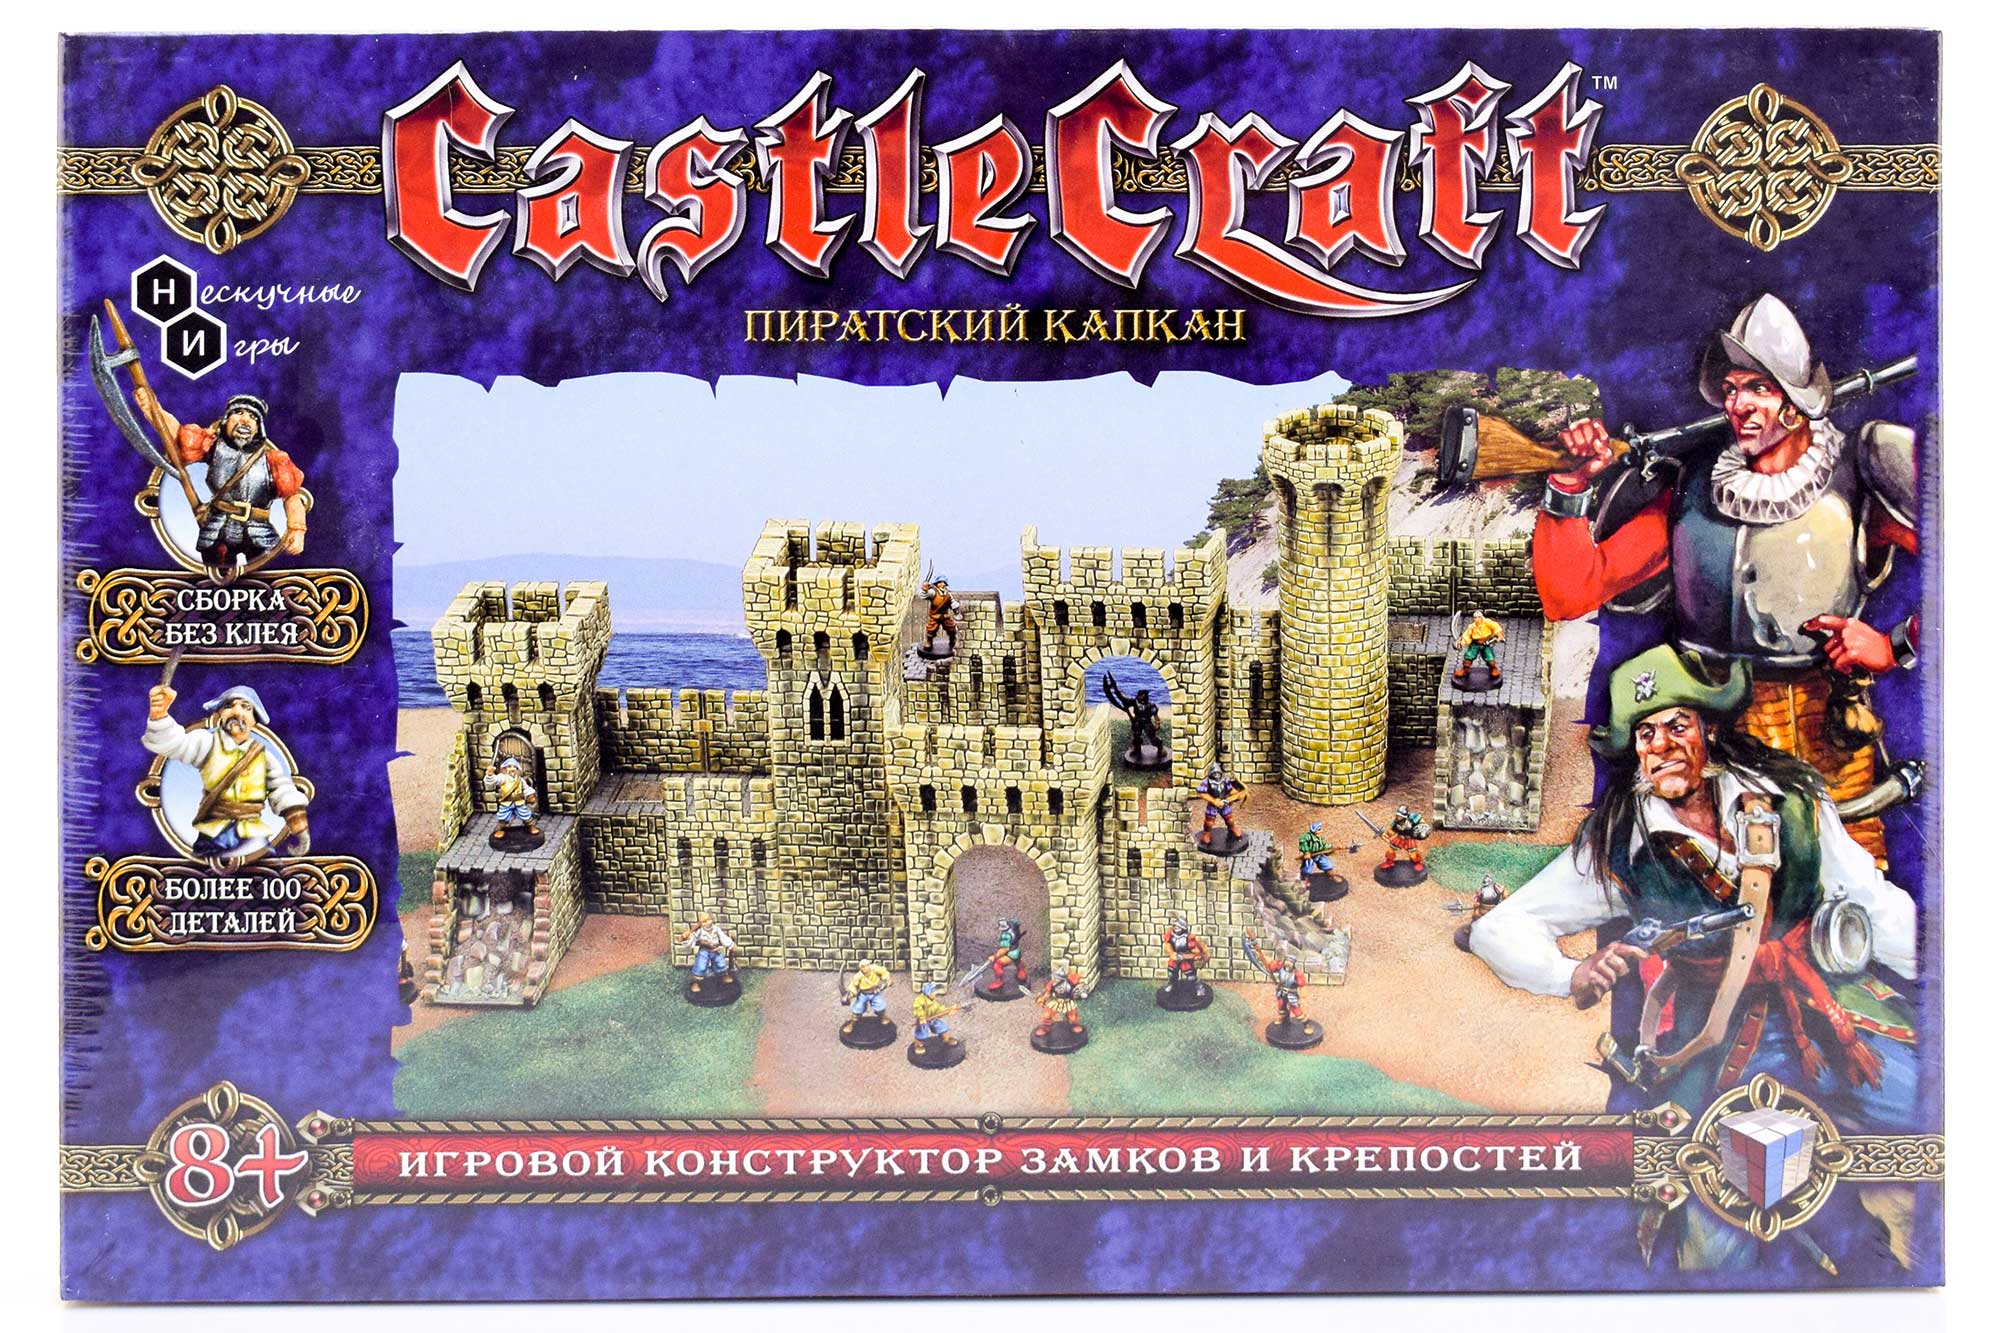 Набор Технолог Castlecraft Пиратский капкан крепость арт. 00345 /4 набор технолог castlecraft восстание гладиаторов крепость арт 00335 4